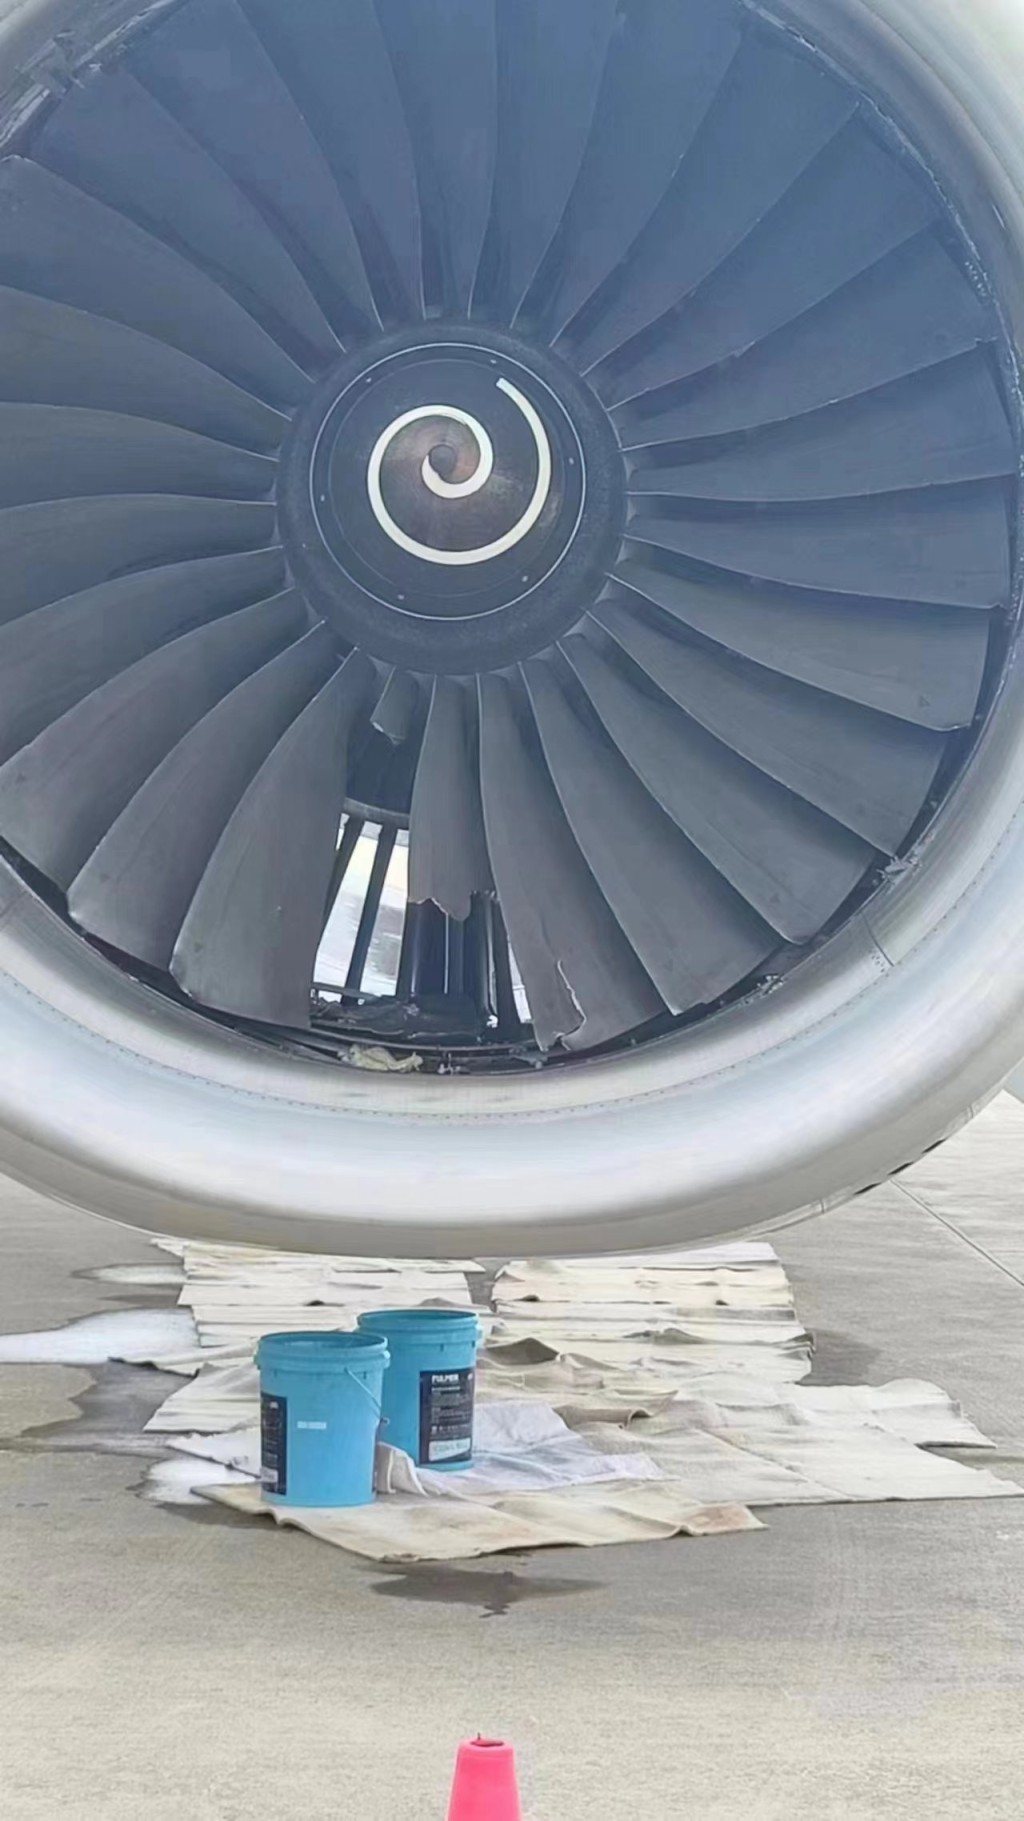 東航客機網上流傳引擎扇葉出現損毀的情況。